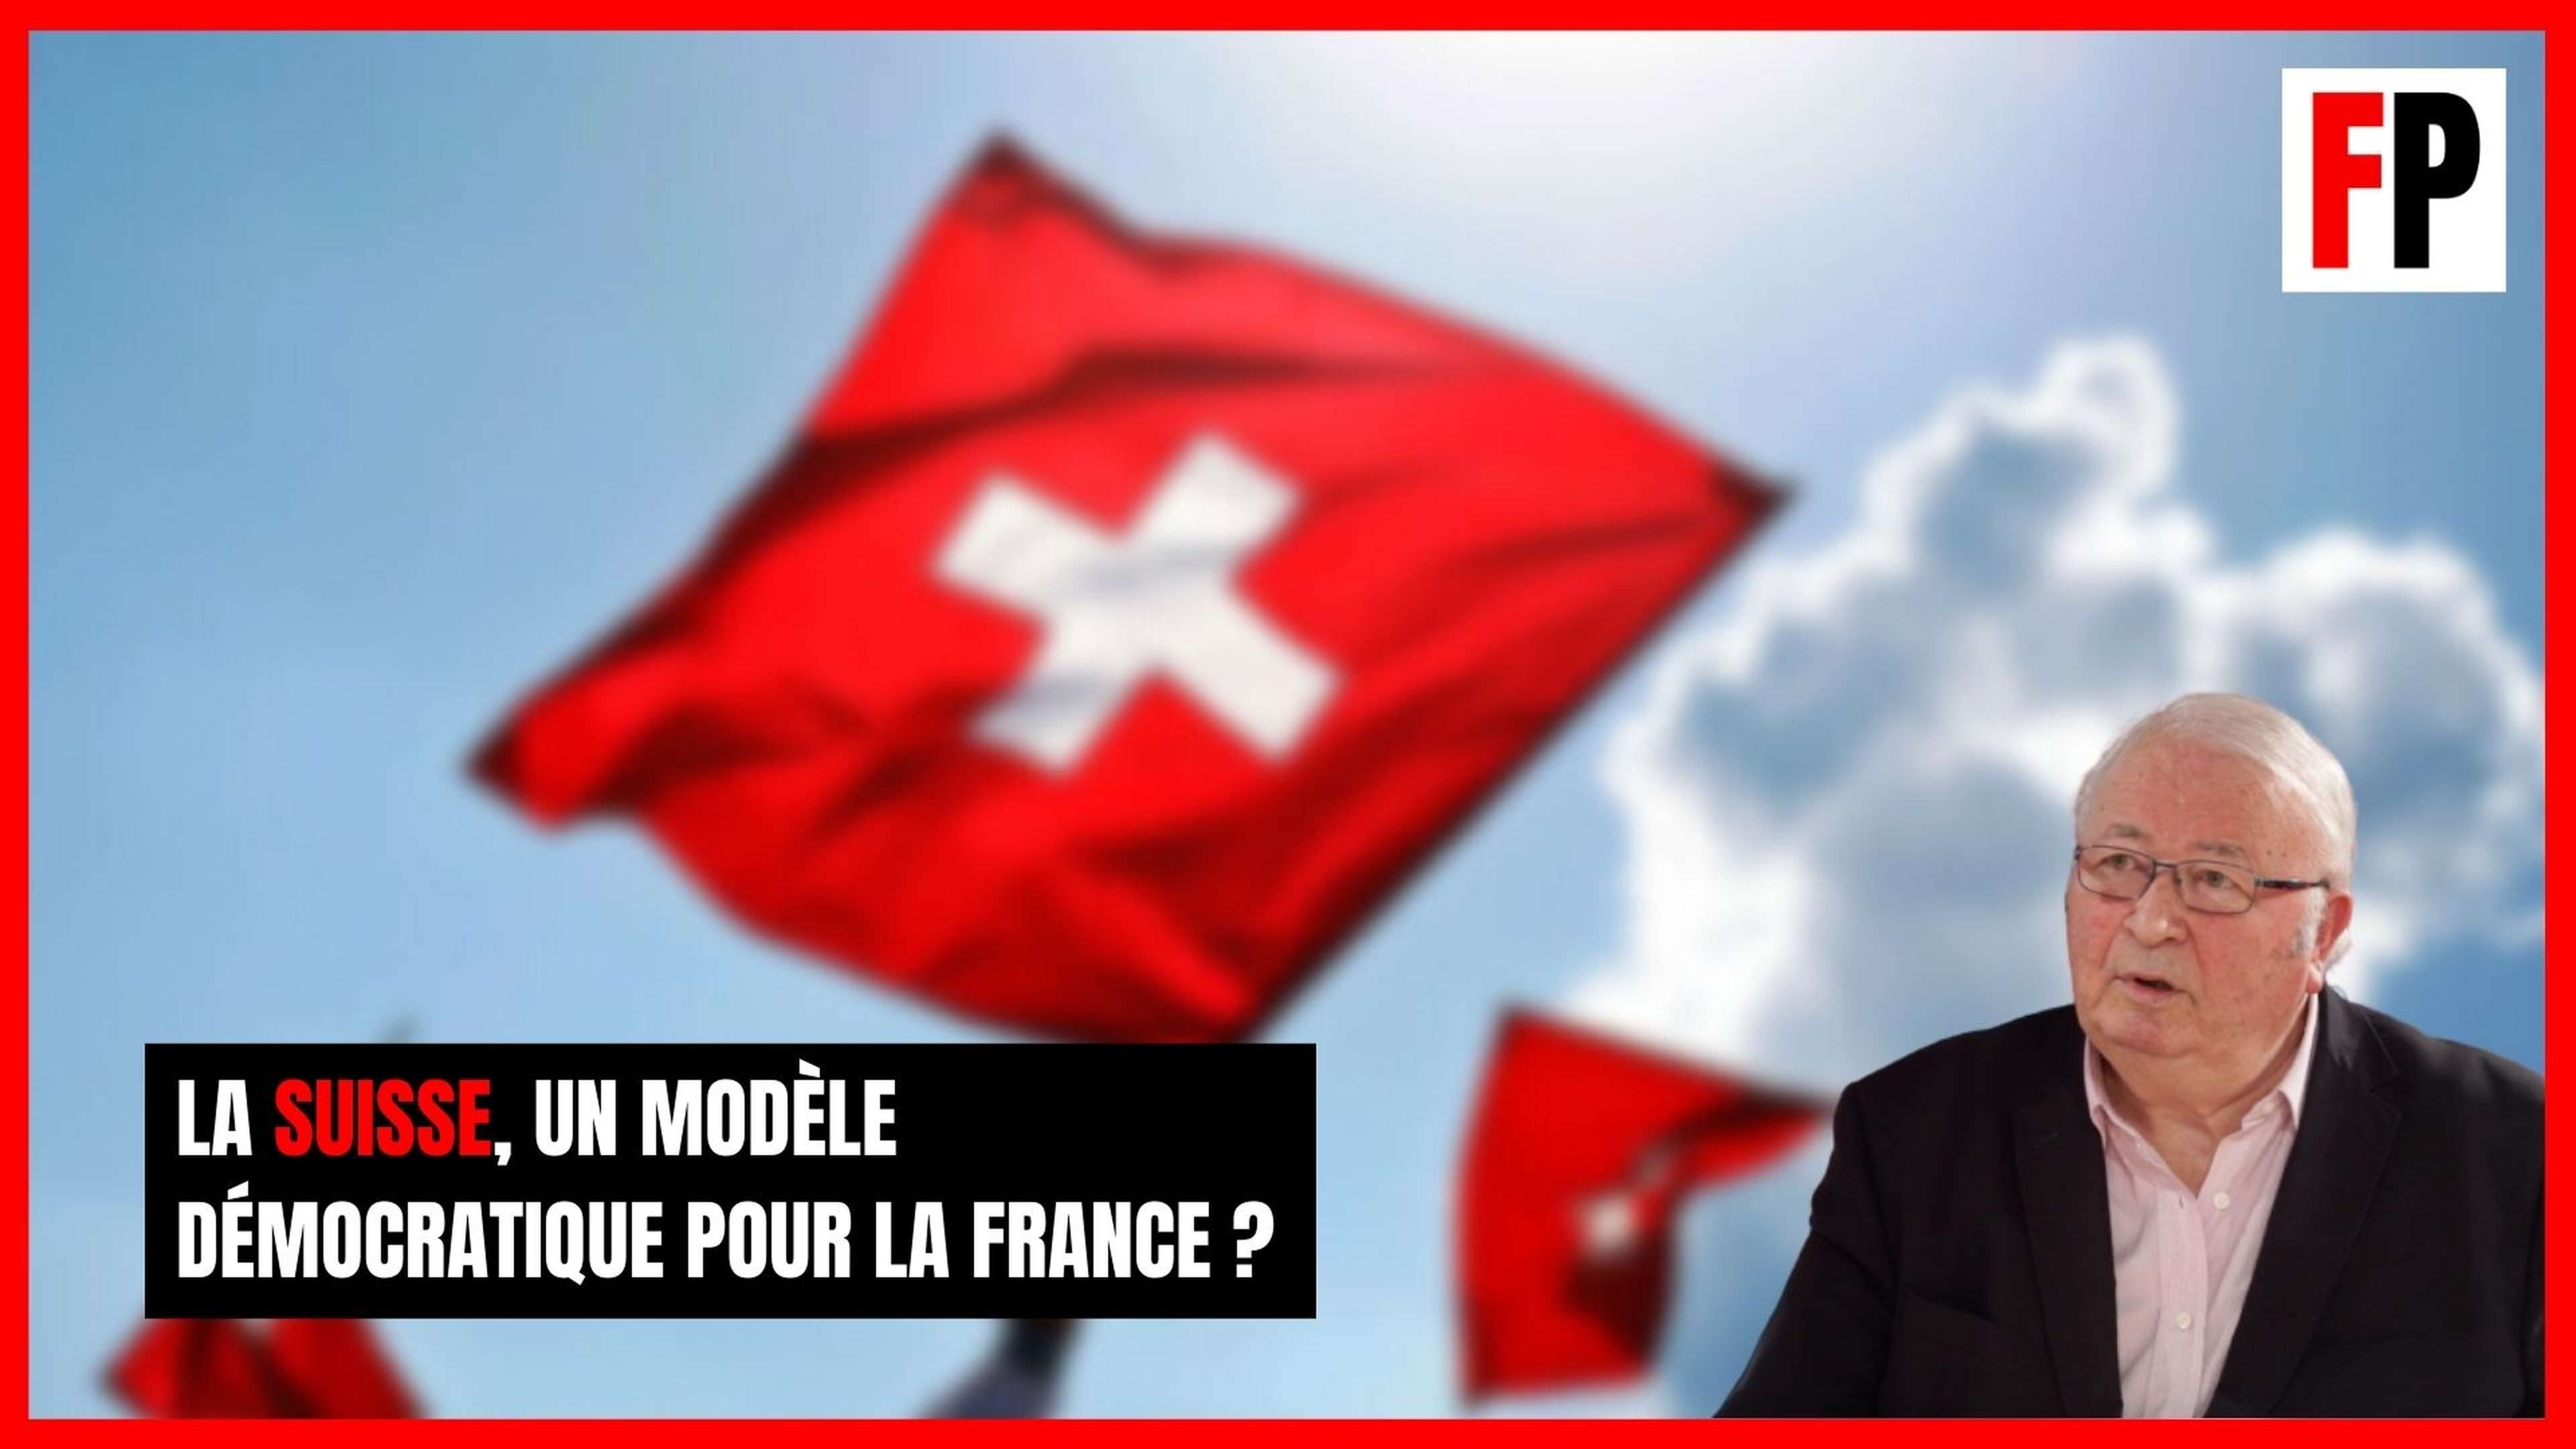 La Suisse, un modèle de démocratie et de souveraineté pour la France ?